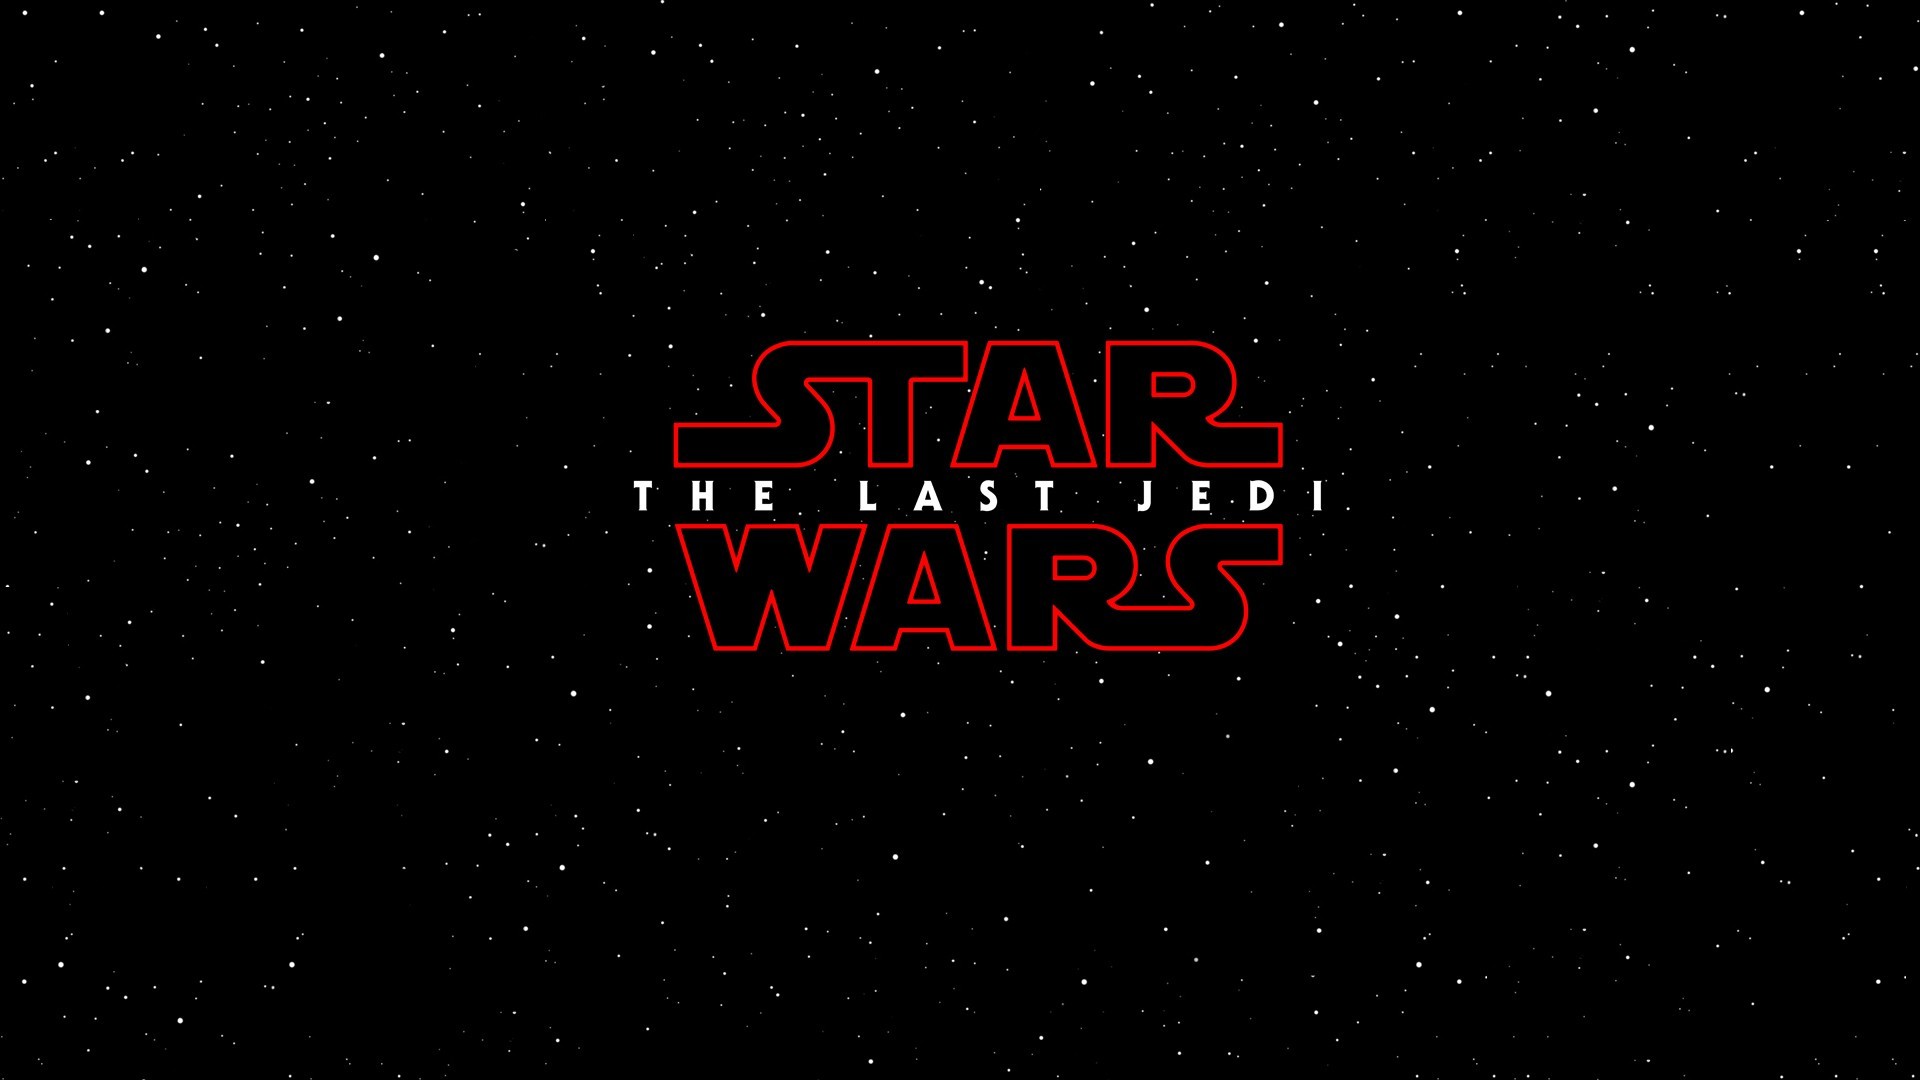 General Star Wars Star Wars The Last Jedi